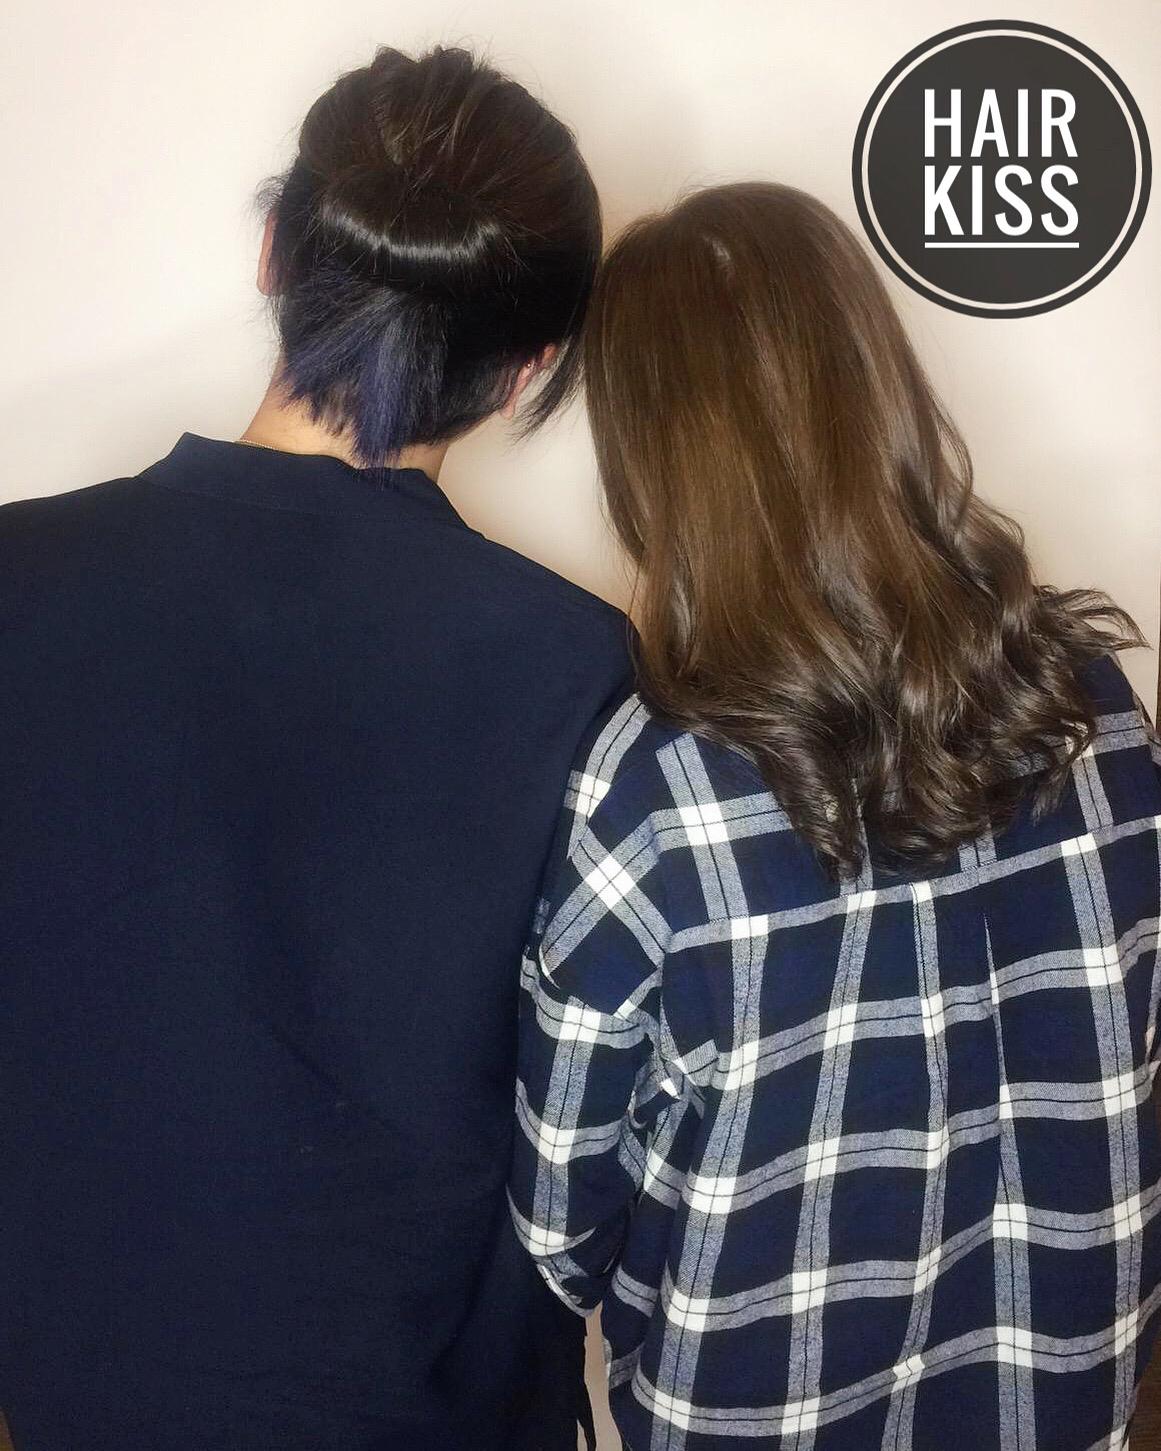 作品參考 / 最新消息:Hair kiss 